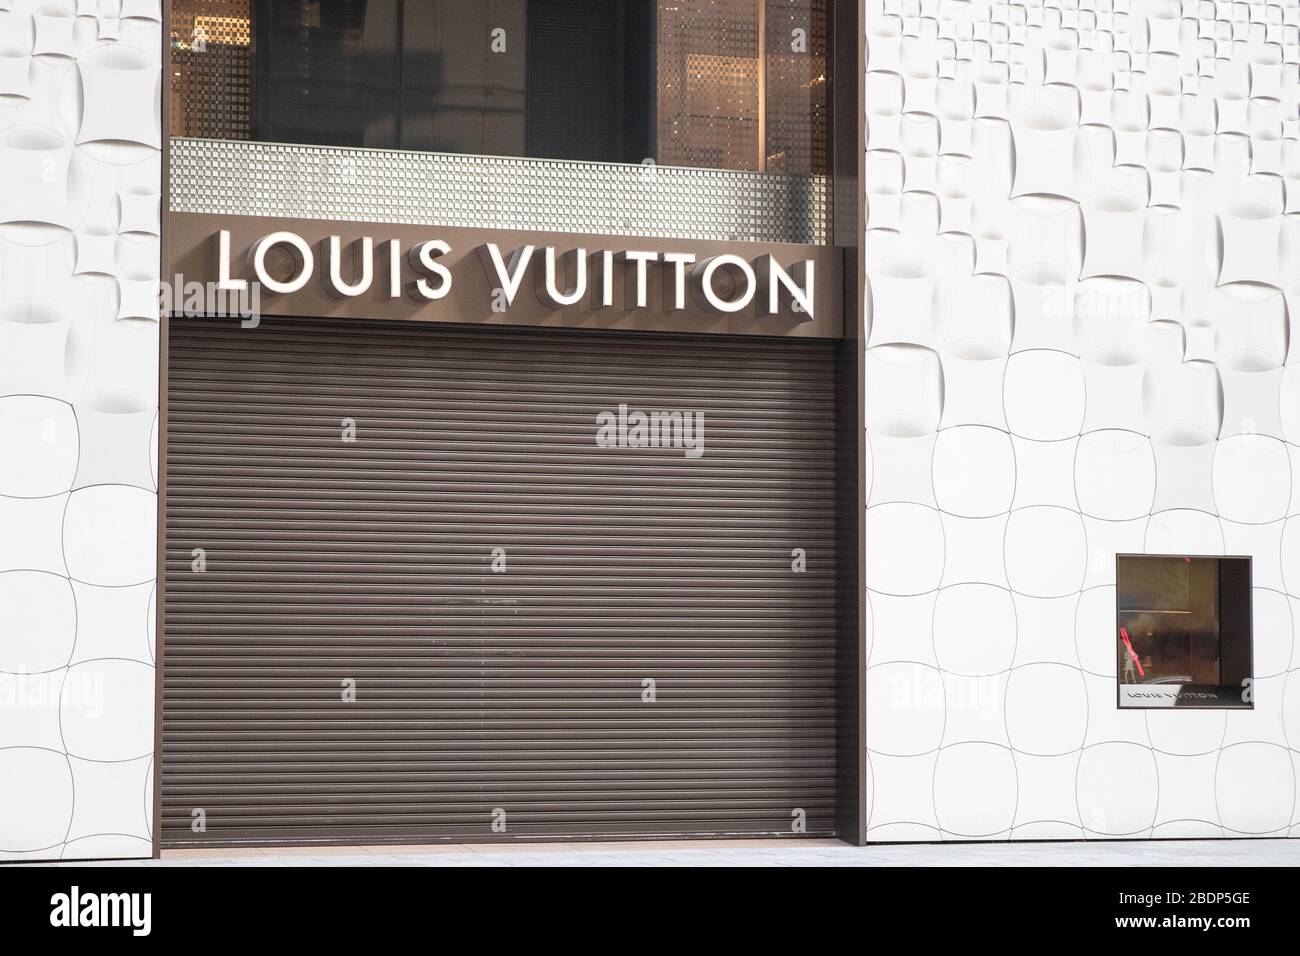 Louis Vuitton Ginza Flagship Store Facade in Tokyo Editorial Stock Photo -  Image of louis, pedestrians: 174187988